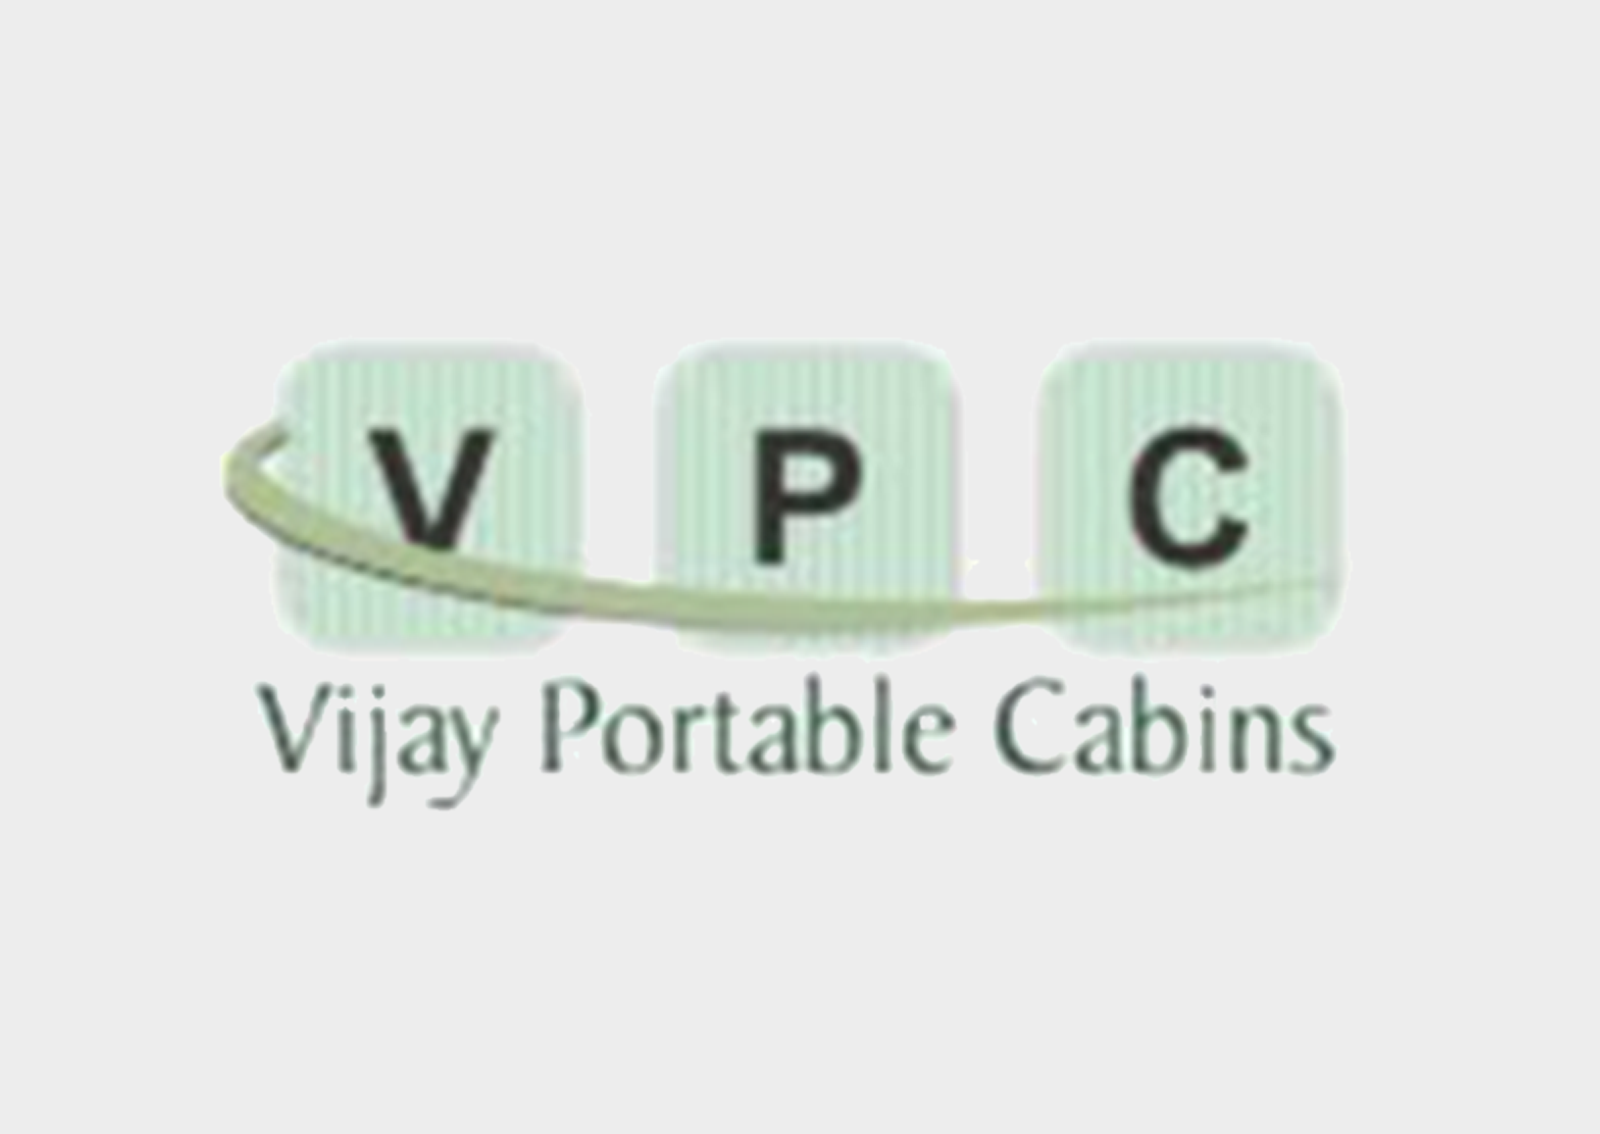 Vijay-Portables.png